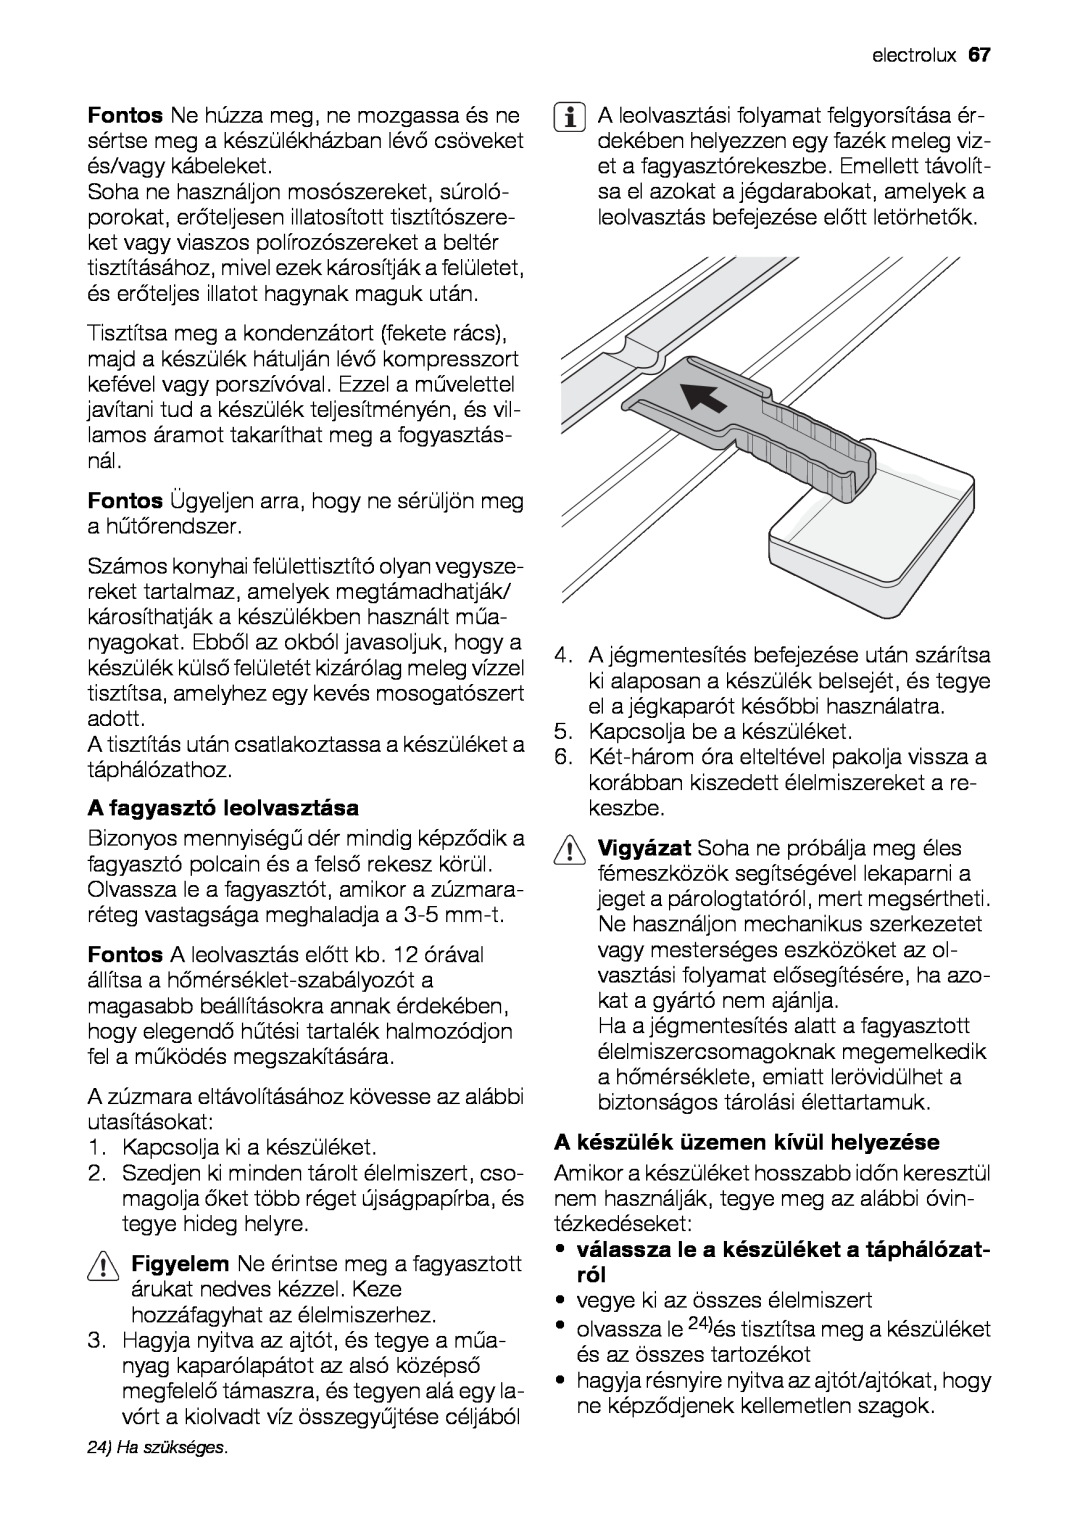 Electrolux EUN12510 user manual A fagyasztó leolvasztása, A készülék üzemen kívül helyezése 